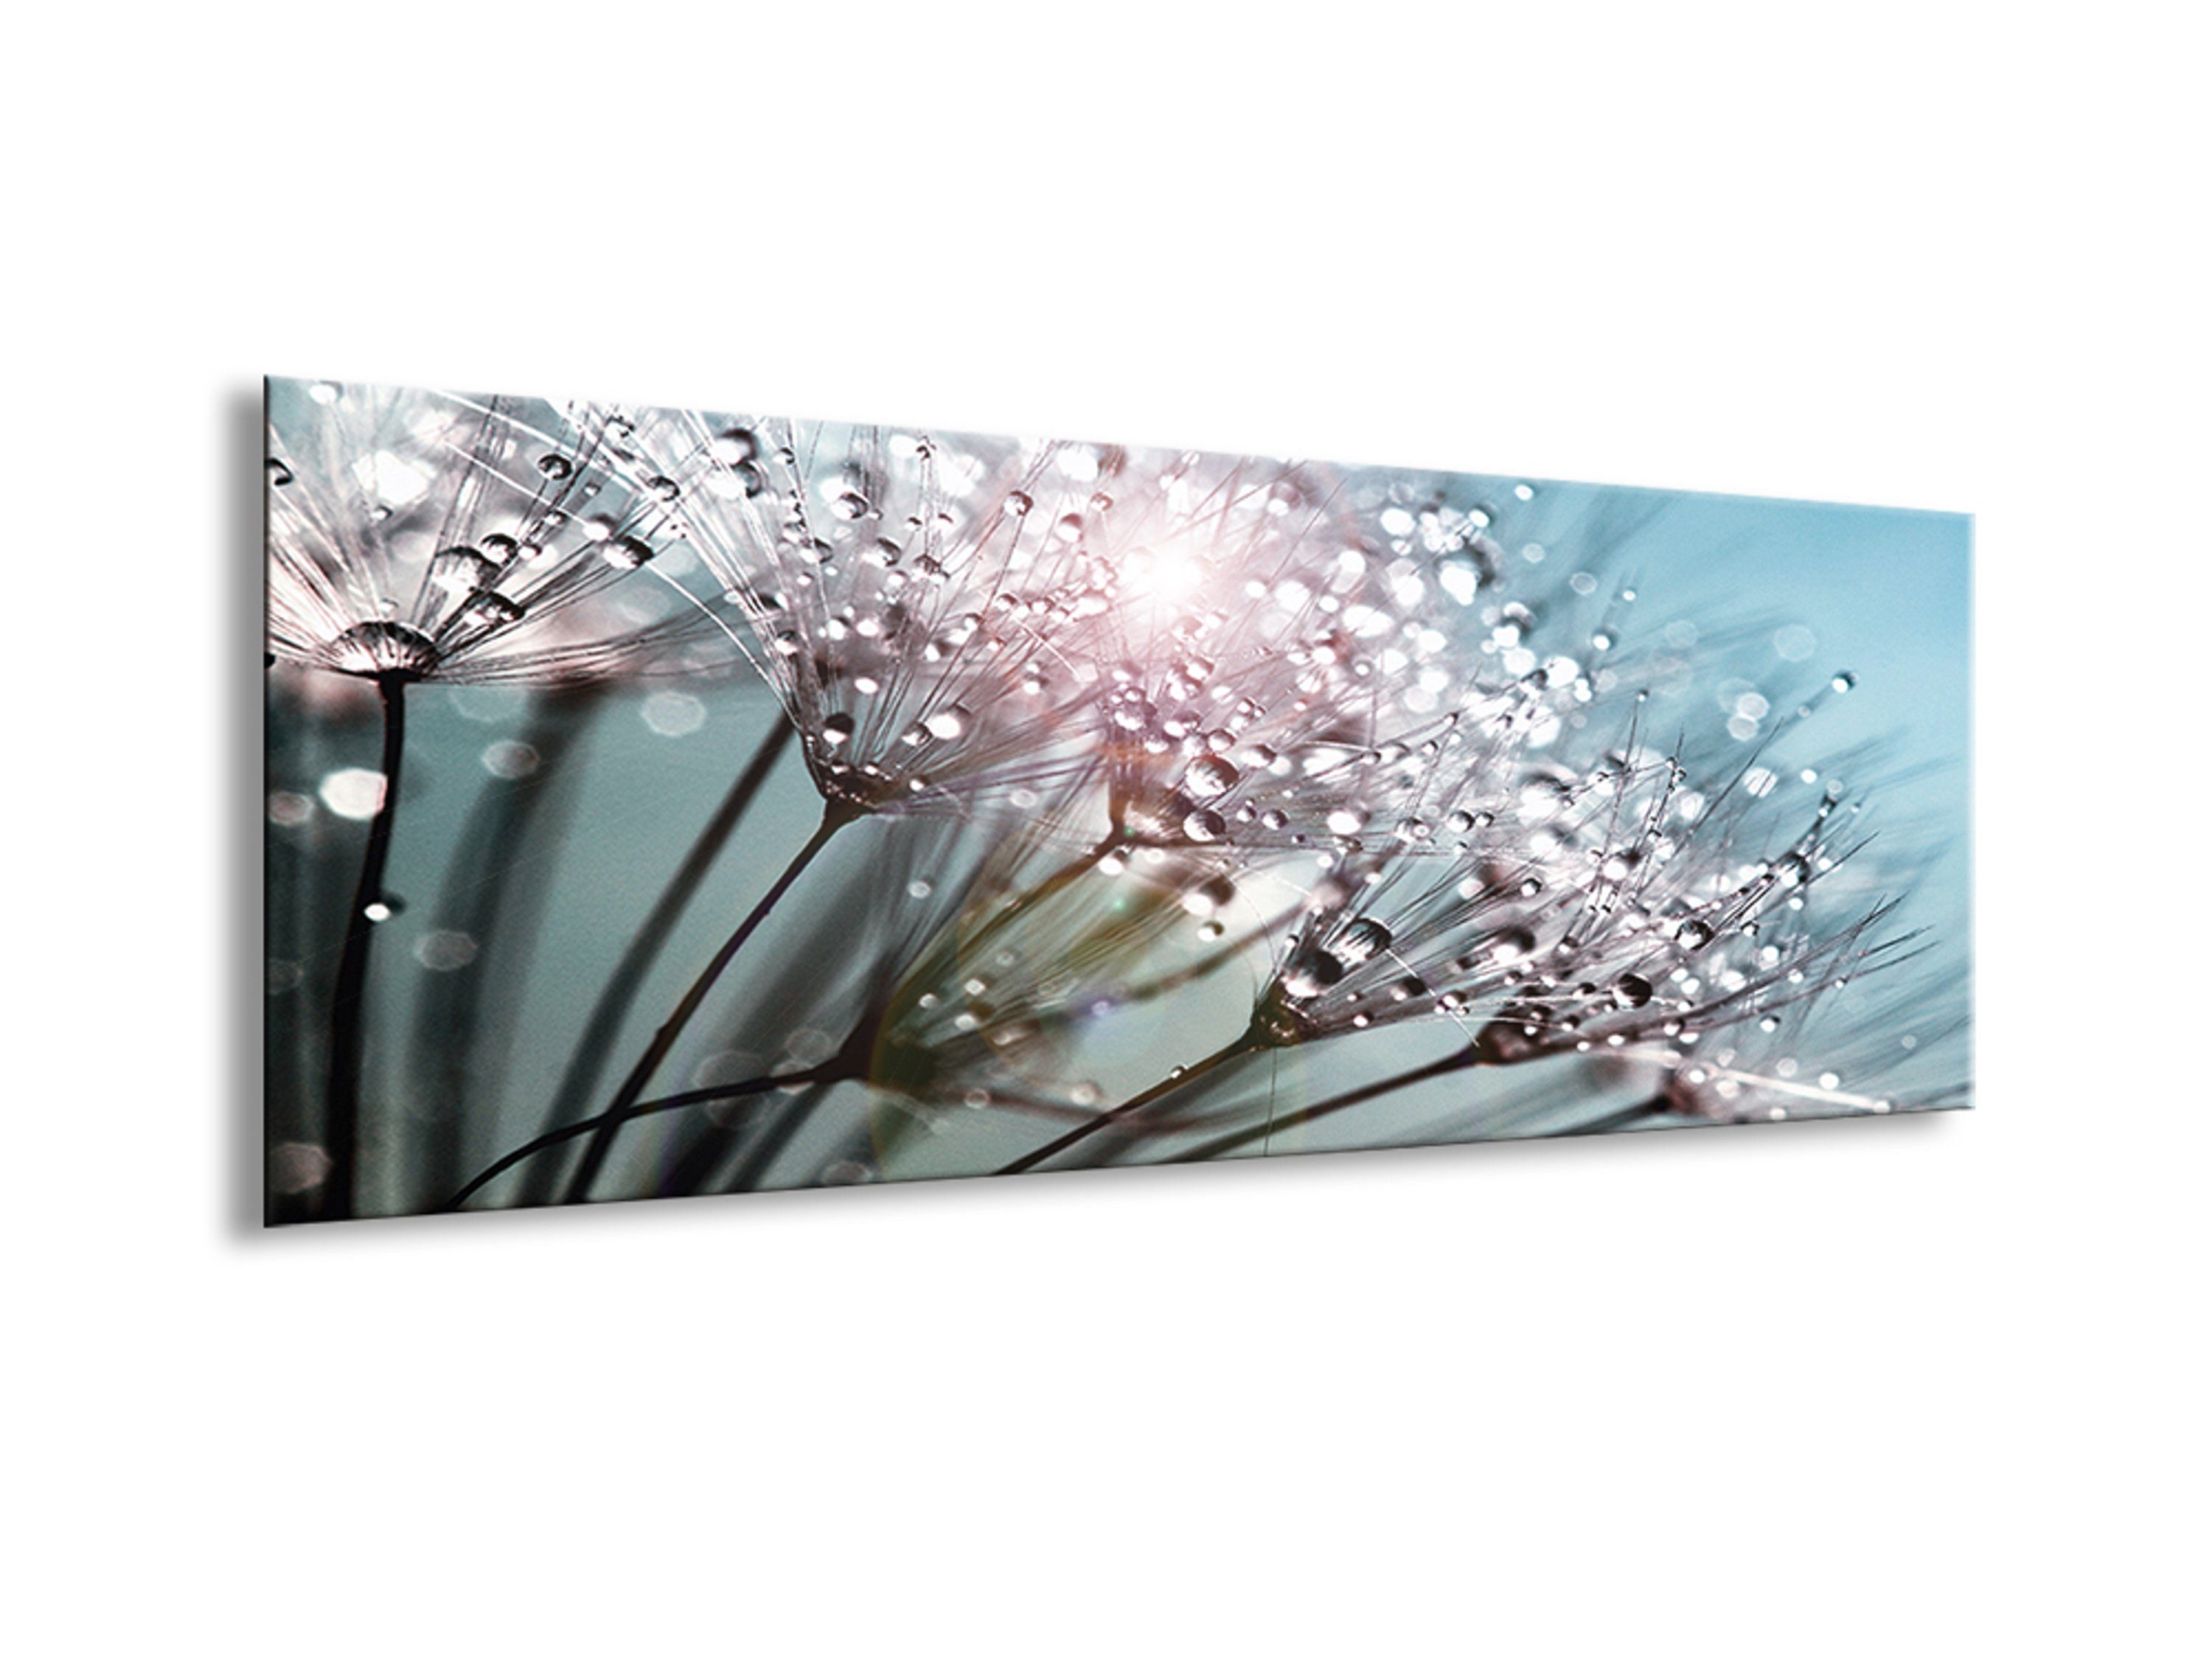 türkis, Glasbild Bild Pusteblume aus Glasbild 80x30cm Wassertropfen Blüten: Glas Blumen Pustbelume auf artissimo und